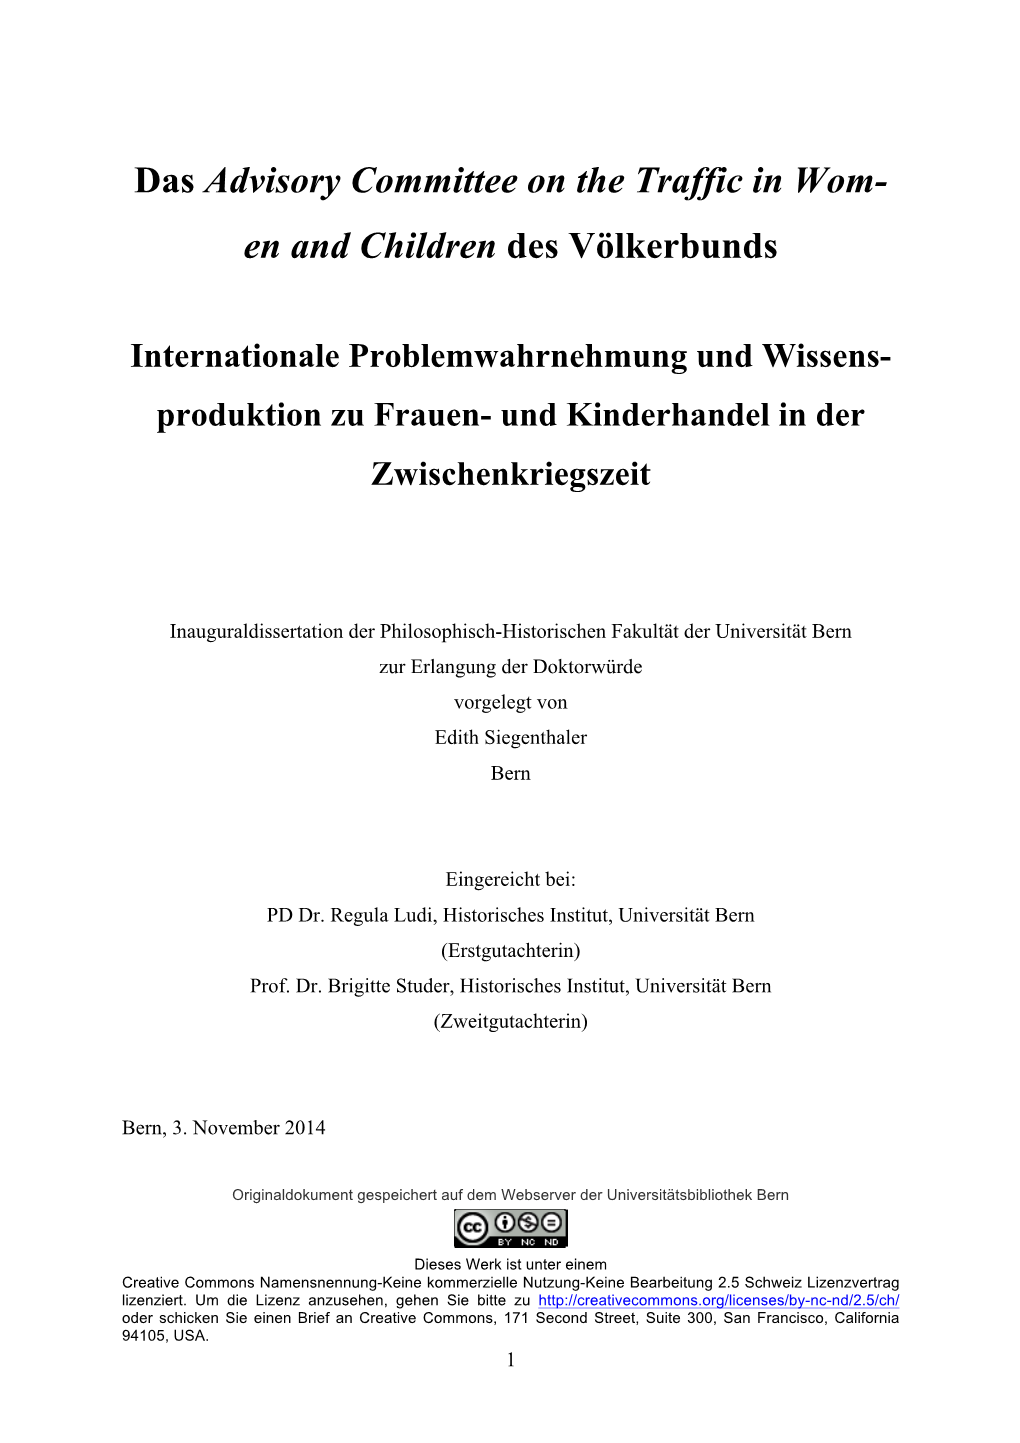 En and Children Des Völkerbunds